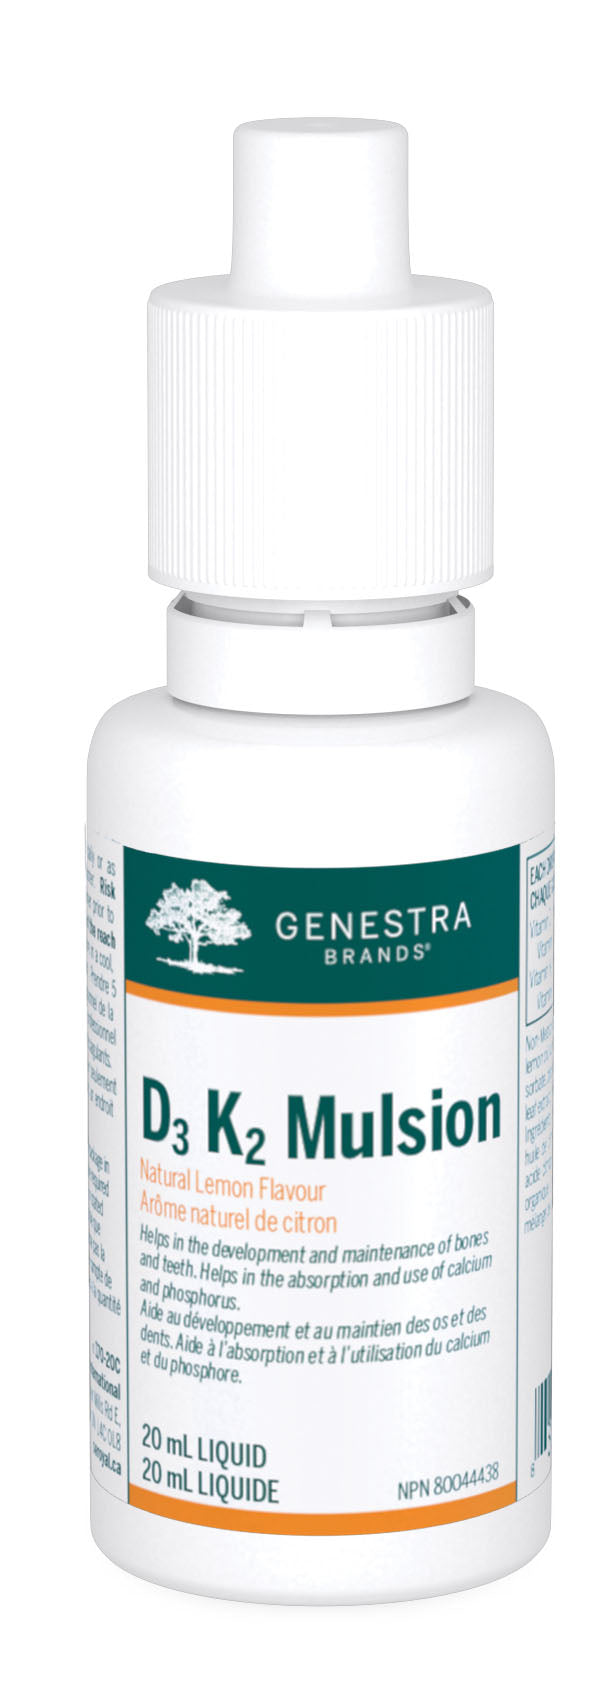 GENESTRA D3 K2 Mulsion (20 ml)